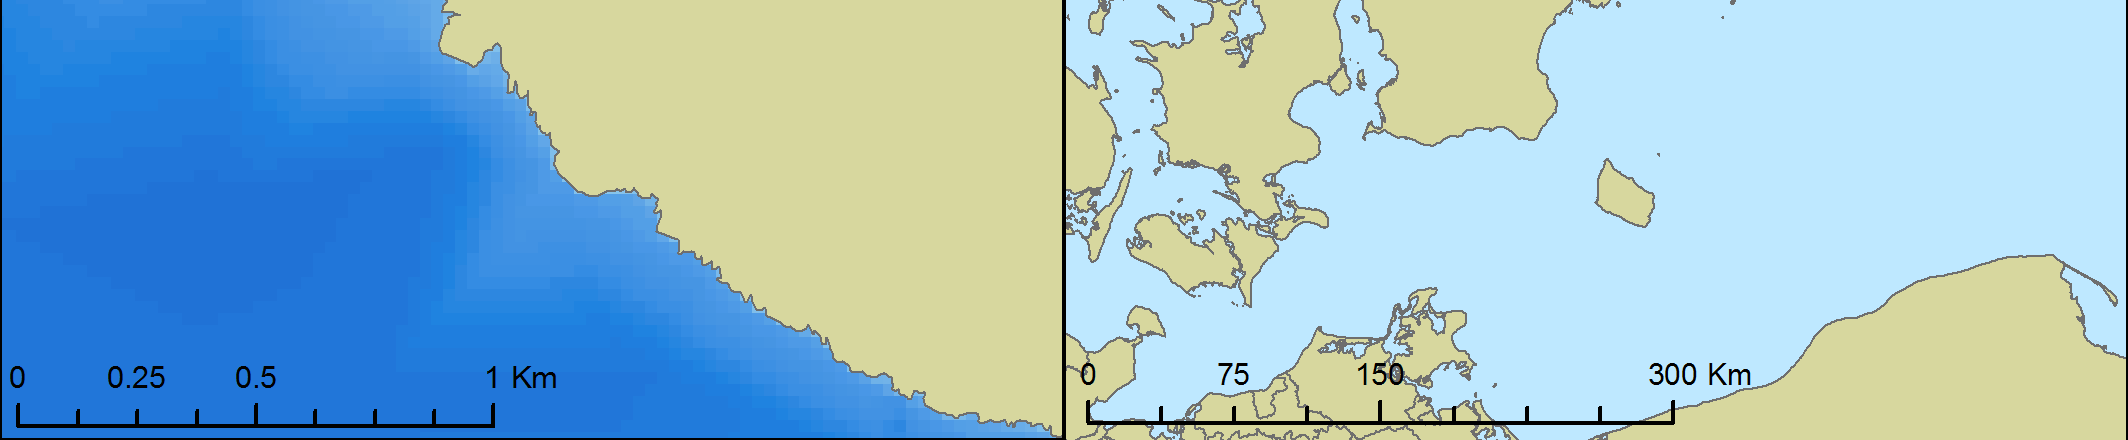 Figur 1. Karta över lokaler vid Hallands väderö (A) samt Kullen (B) på Skånes västkust vilka har inventerats med de visuella metoderna dyk och dropvideo.